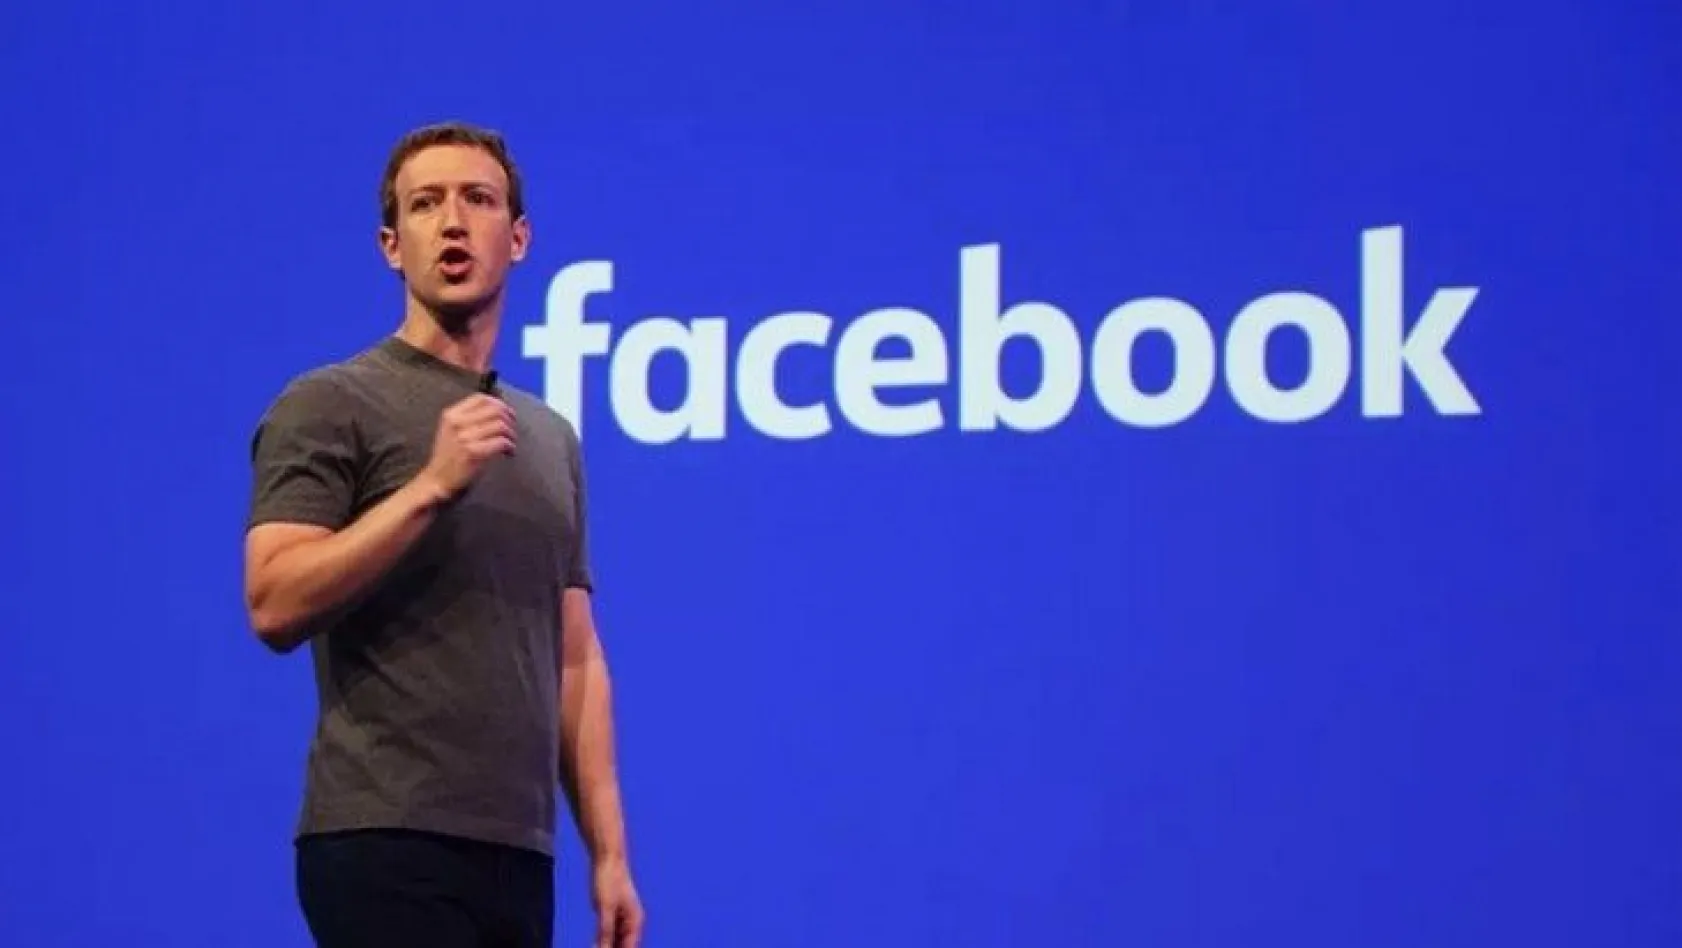 Facebook kurucusu 3 saatte 6,7 milyar dolar kaybetti